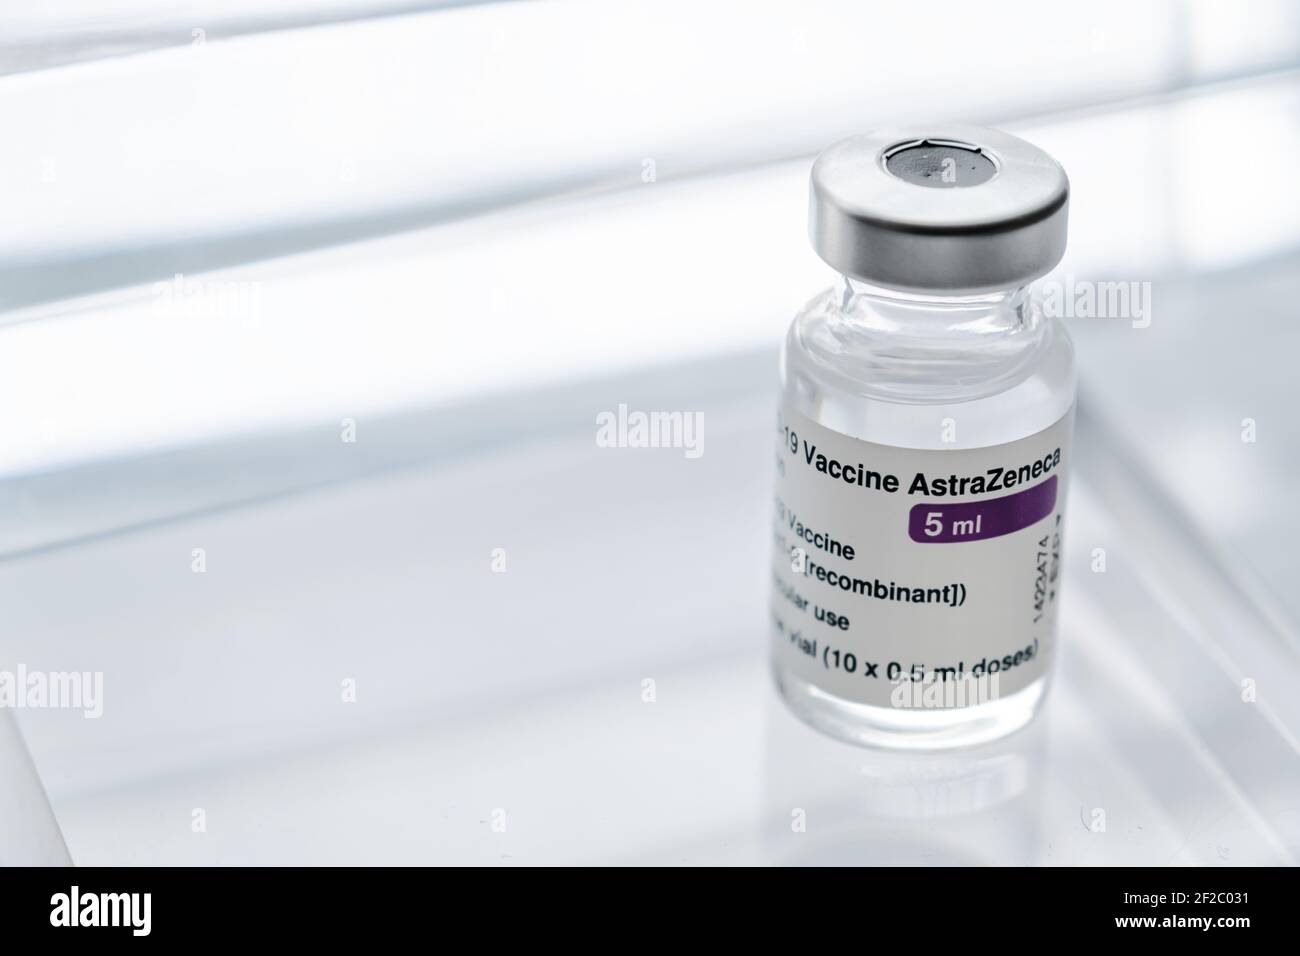 Montreal, CA - 11 March 2021: Vial of Astrazeneca Covid-19 vaccine Stock Photo